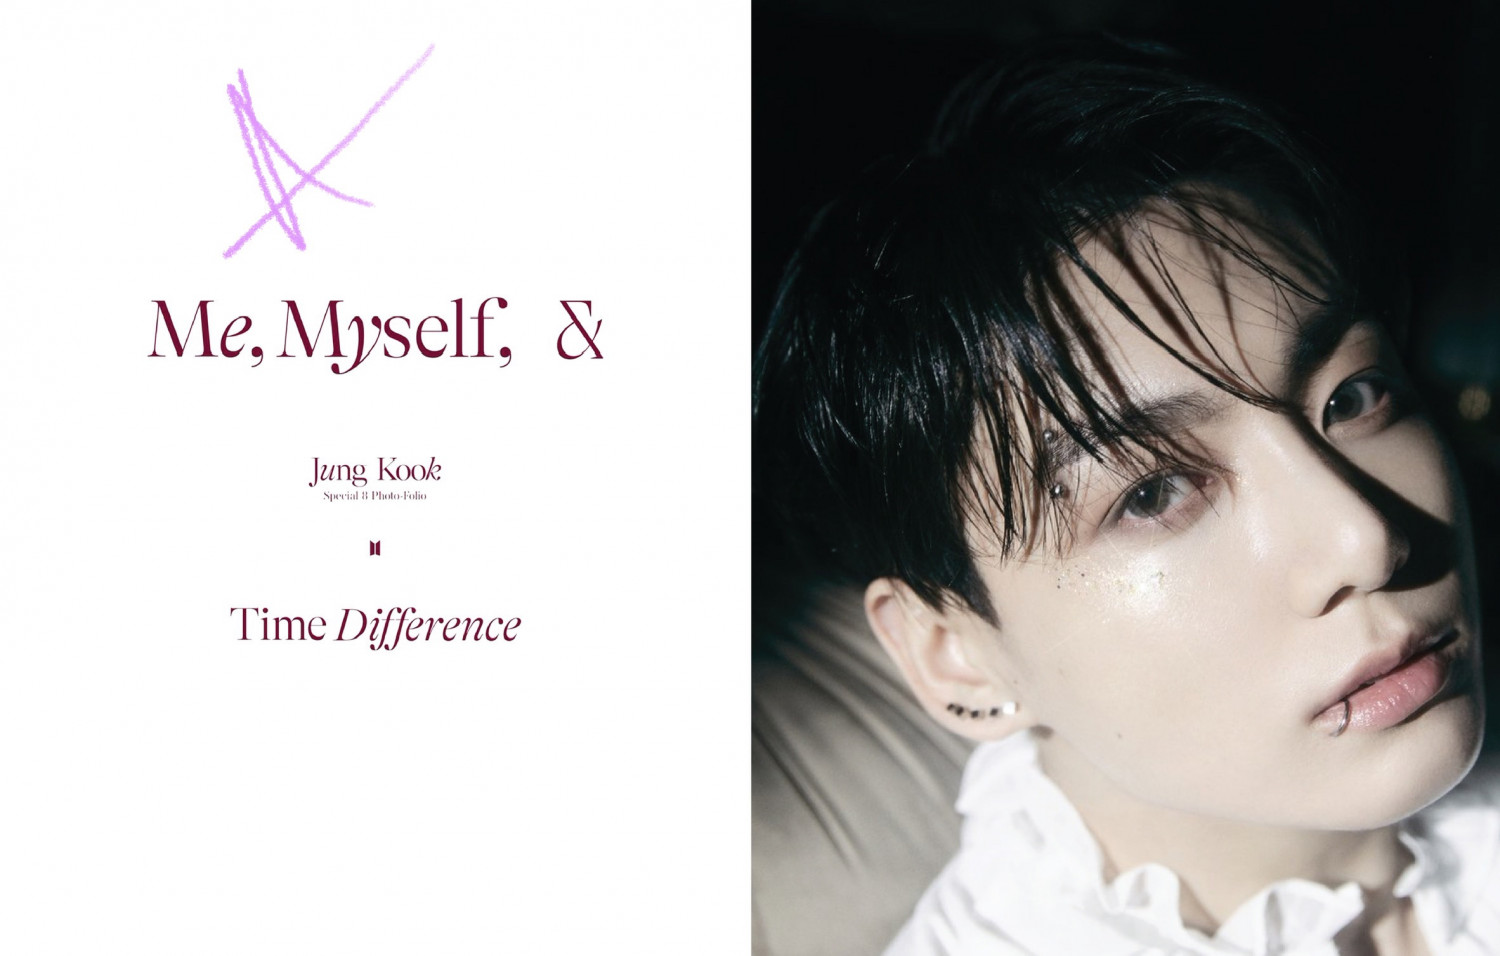 8Pcs/Set K-POP BTS ME, MYSELF & JUNGKOOK Concept Mini Concert Poster